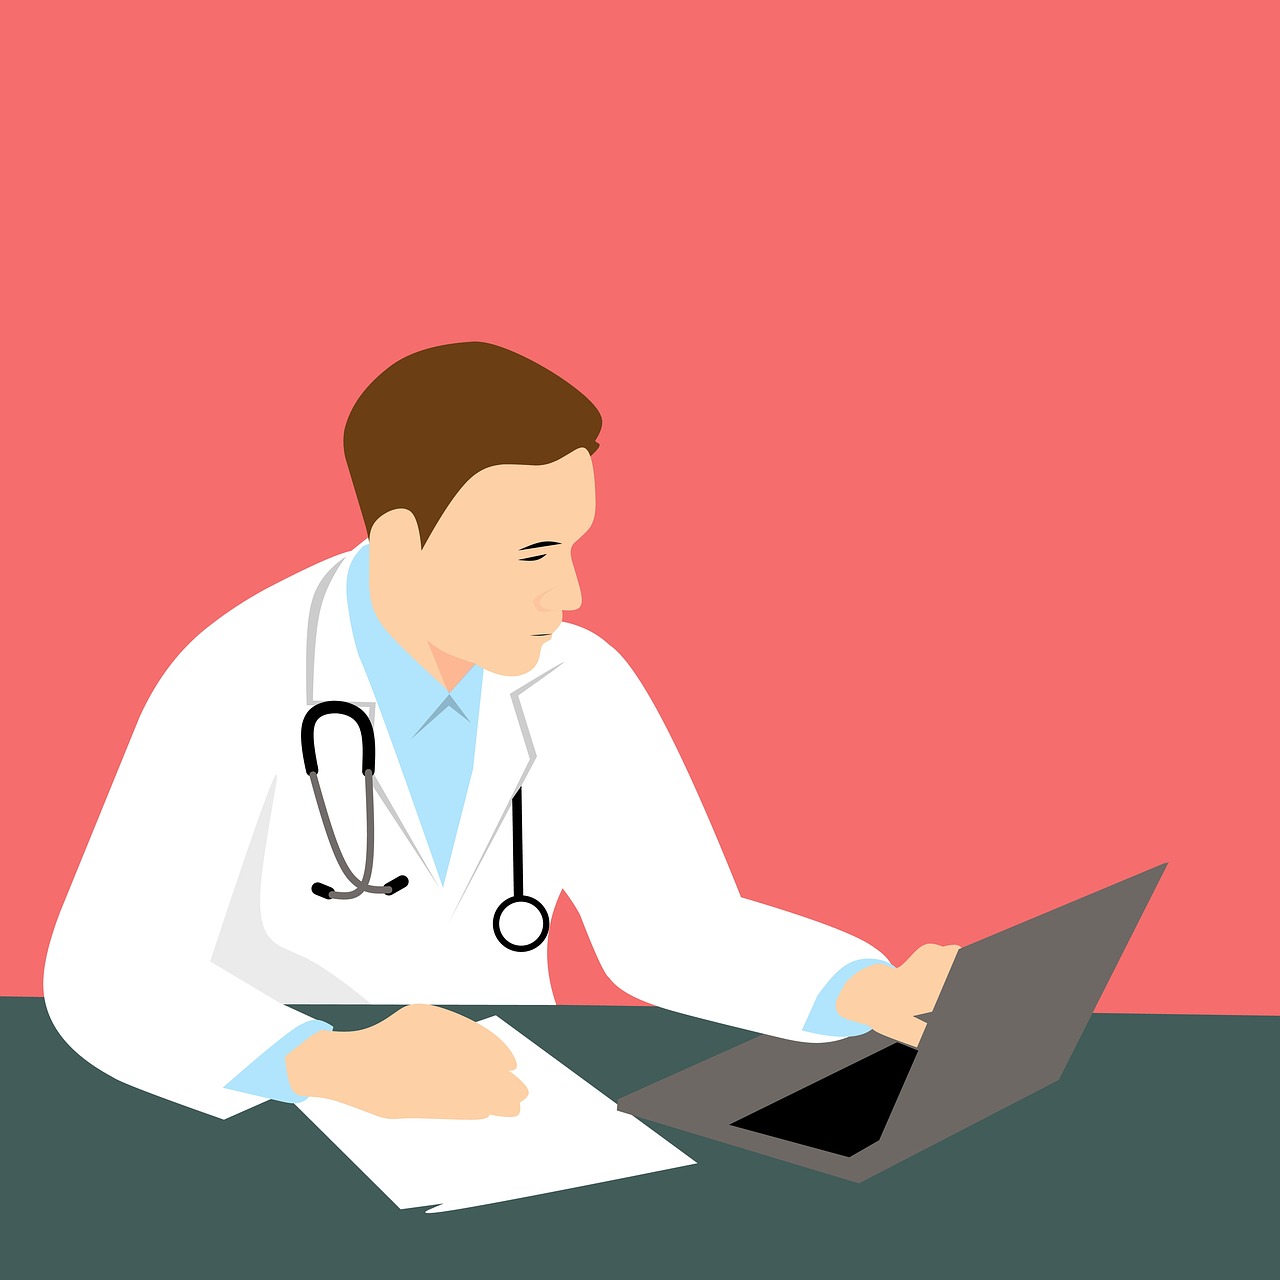 Zadaj pytanie lekarzowi online za darmo. Pytania i odpowiedzi na tematy medyczne – za darmo. Zadaj pytanie lekarzowi bezpłatnie